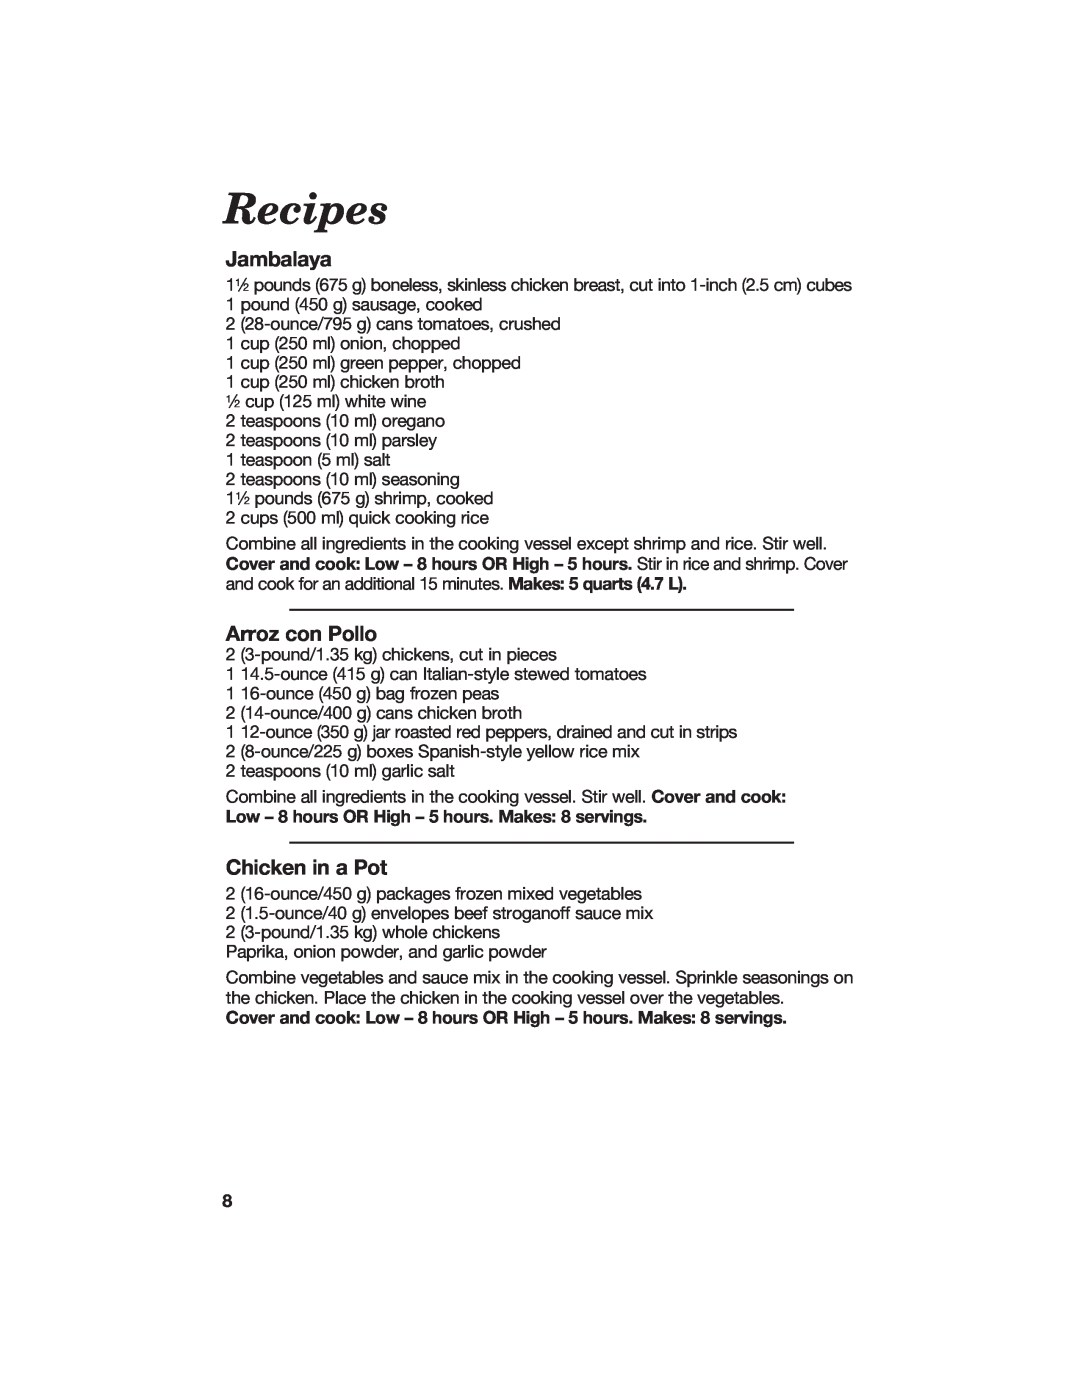 Hamilton Beach 840133300 manual Recipes, Jambalaya, Arroz con Pollo, Chicken in a Pot 